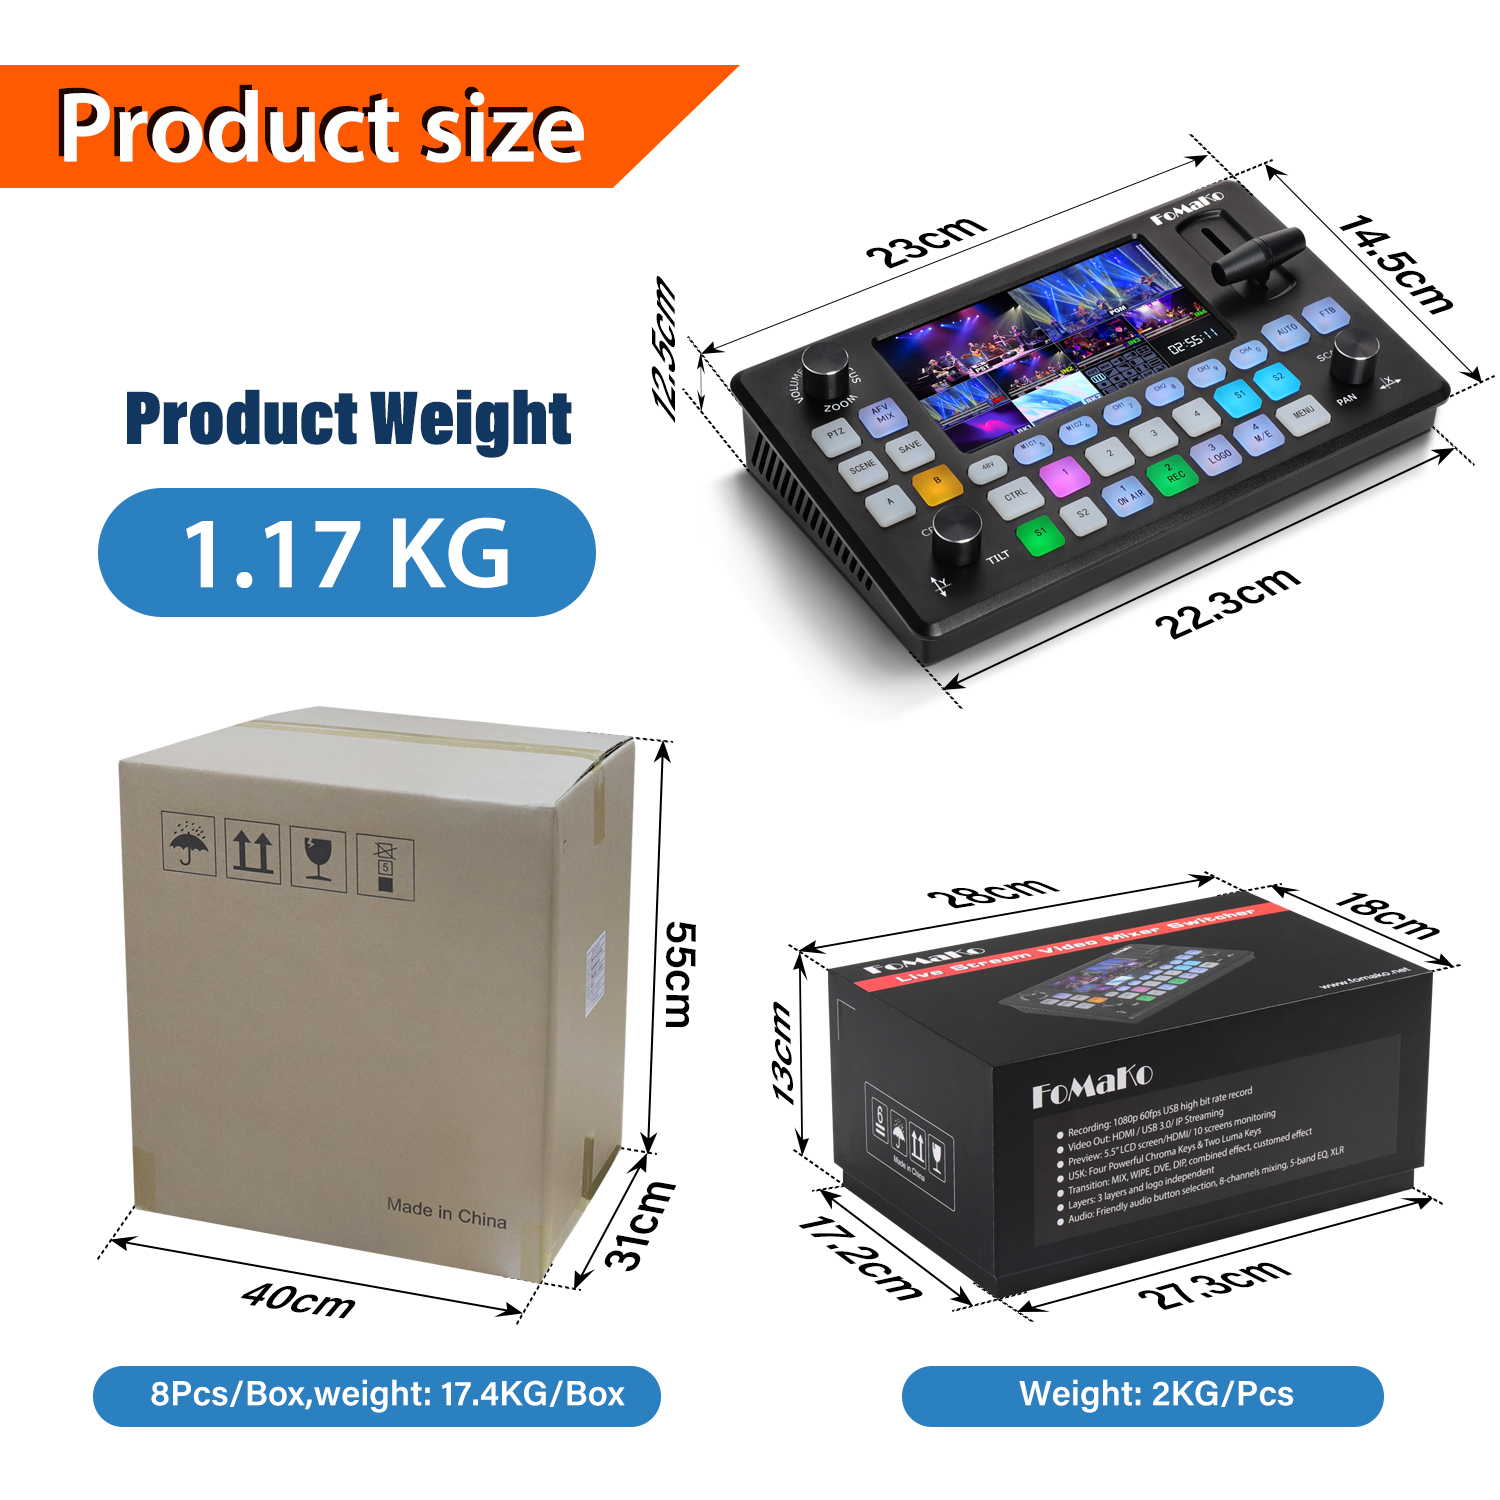 KC601-Pro-video-switch-package-size.jpg